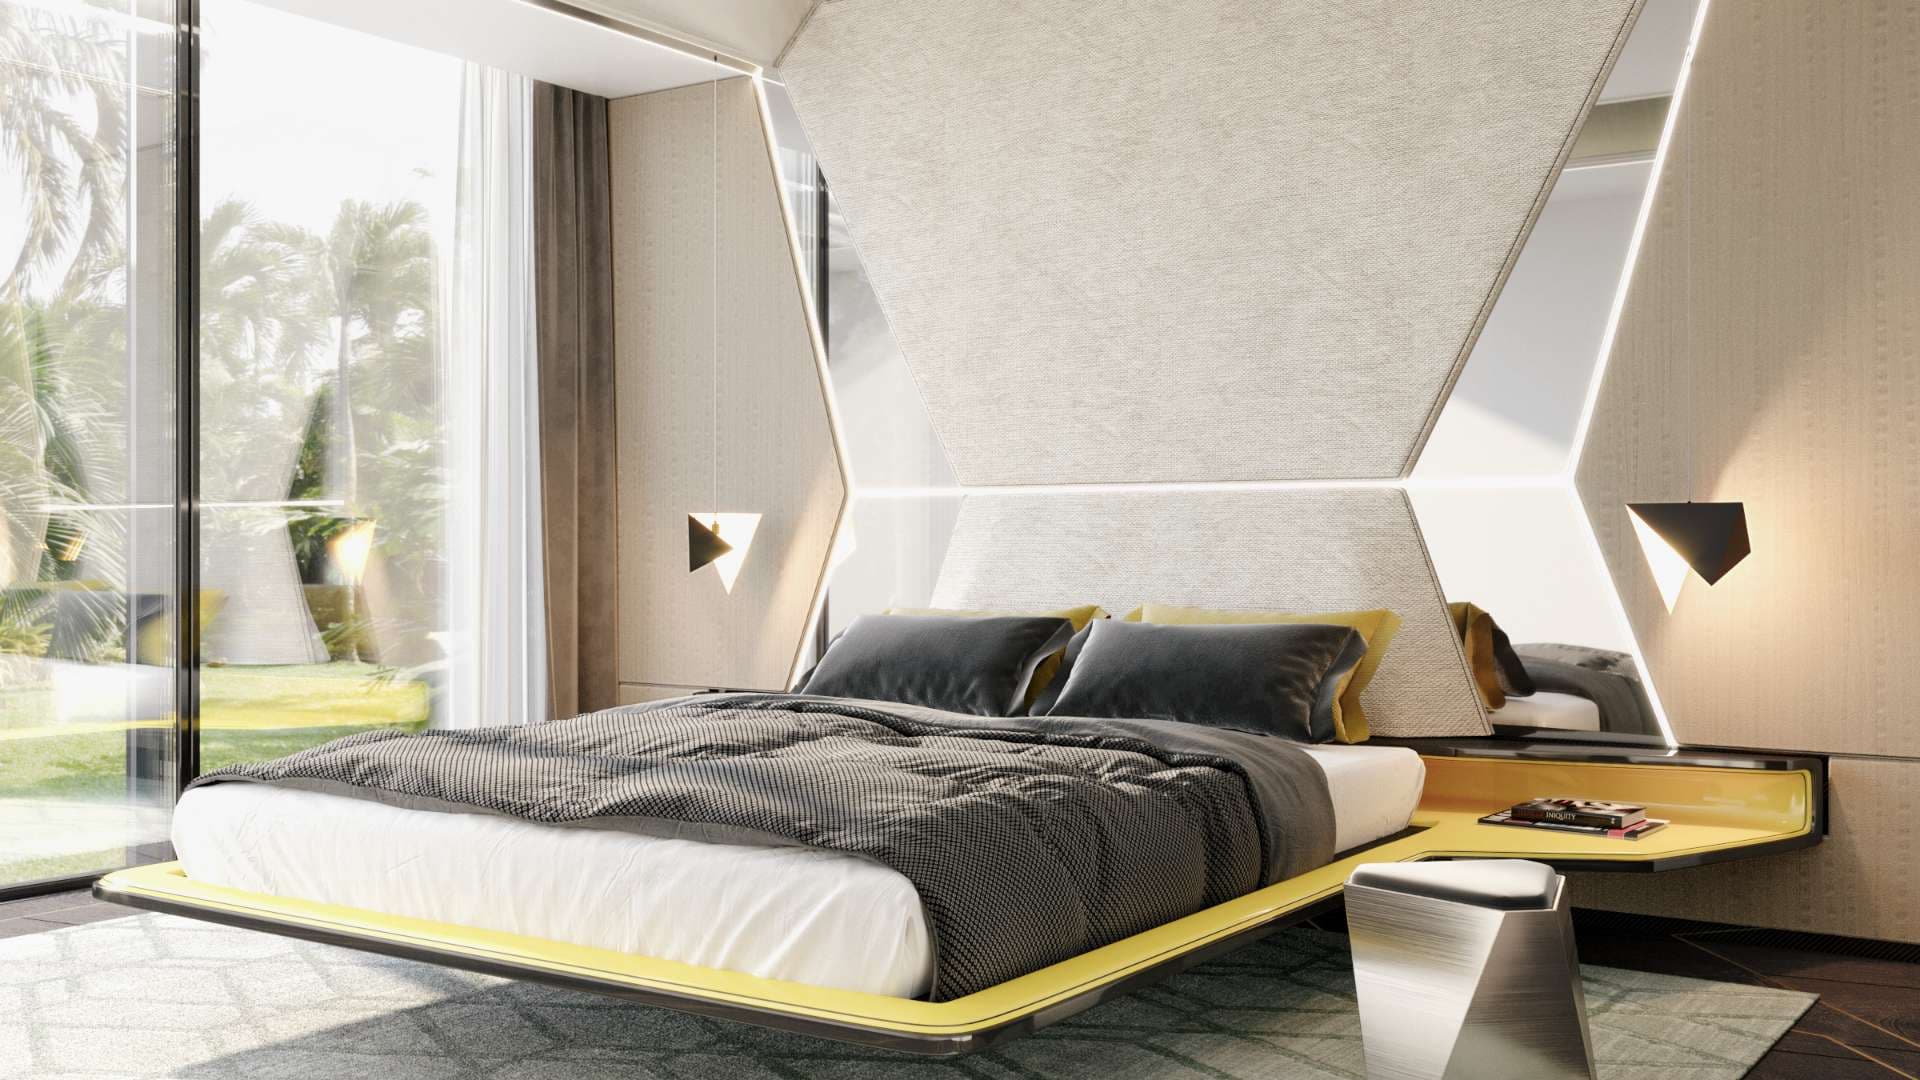 6 Bedroom Villa For Sale Dubai Hills Vista Lp07558 D79a31c6ab10a00.jpg